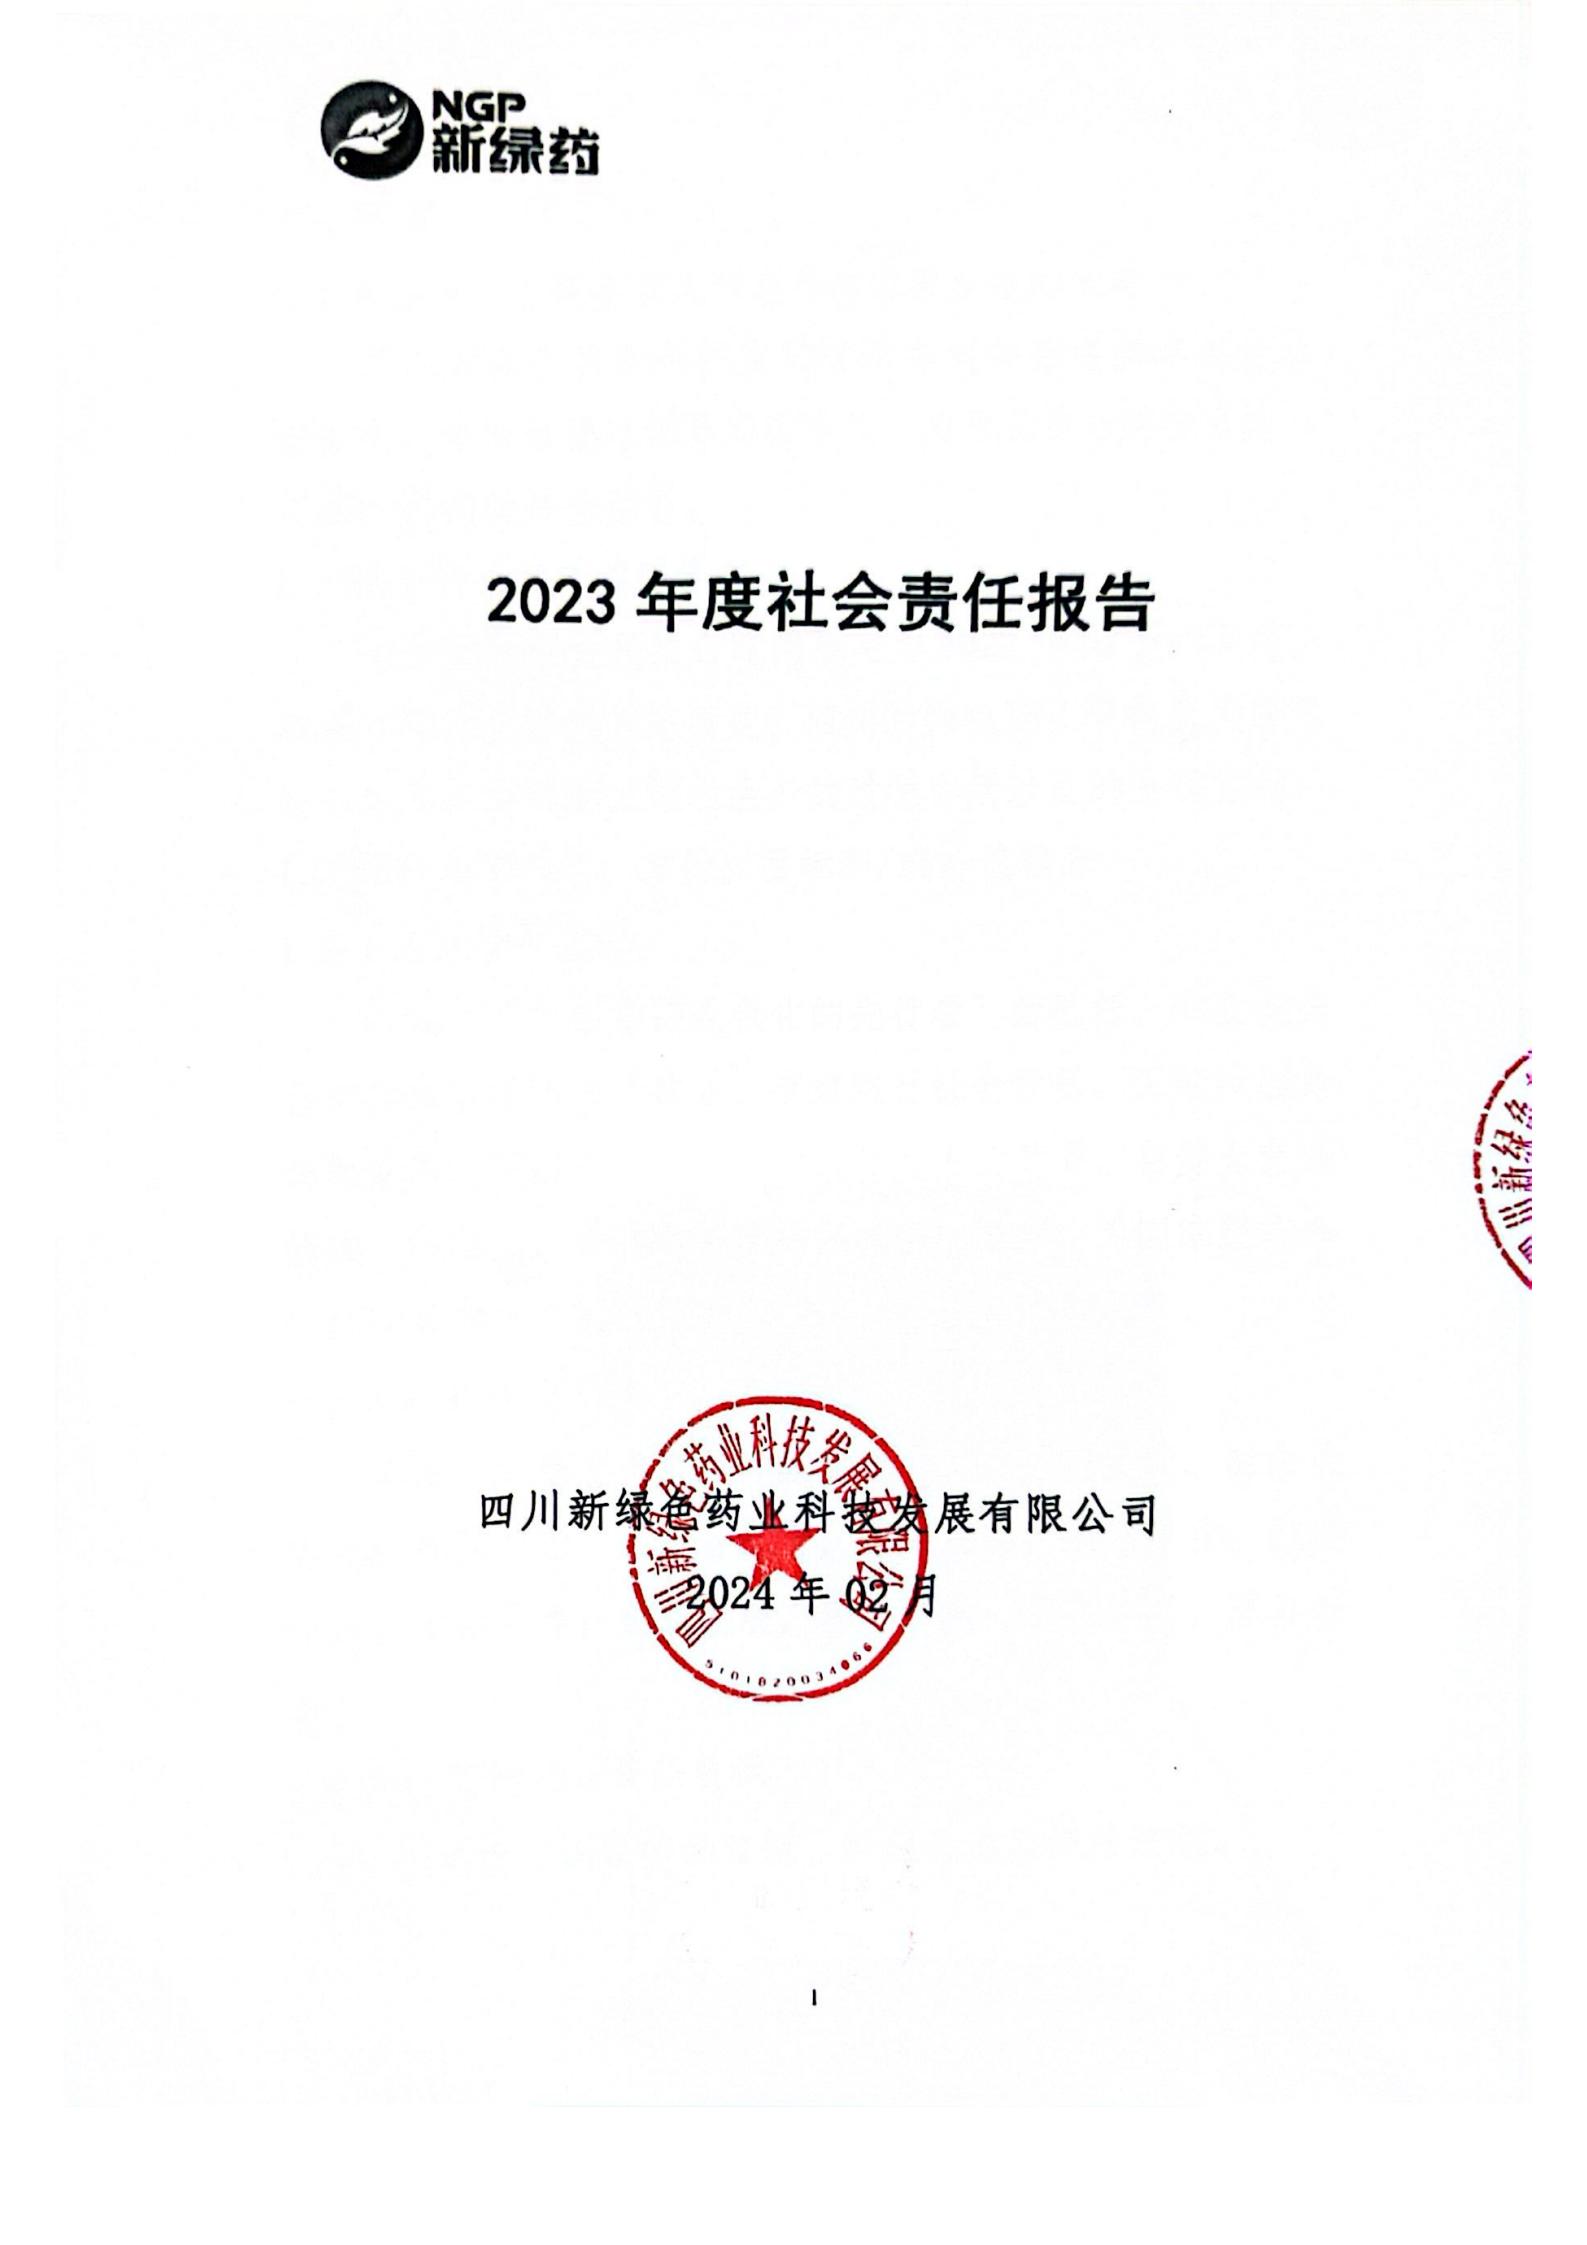 2023年度社会责任报告公示